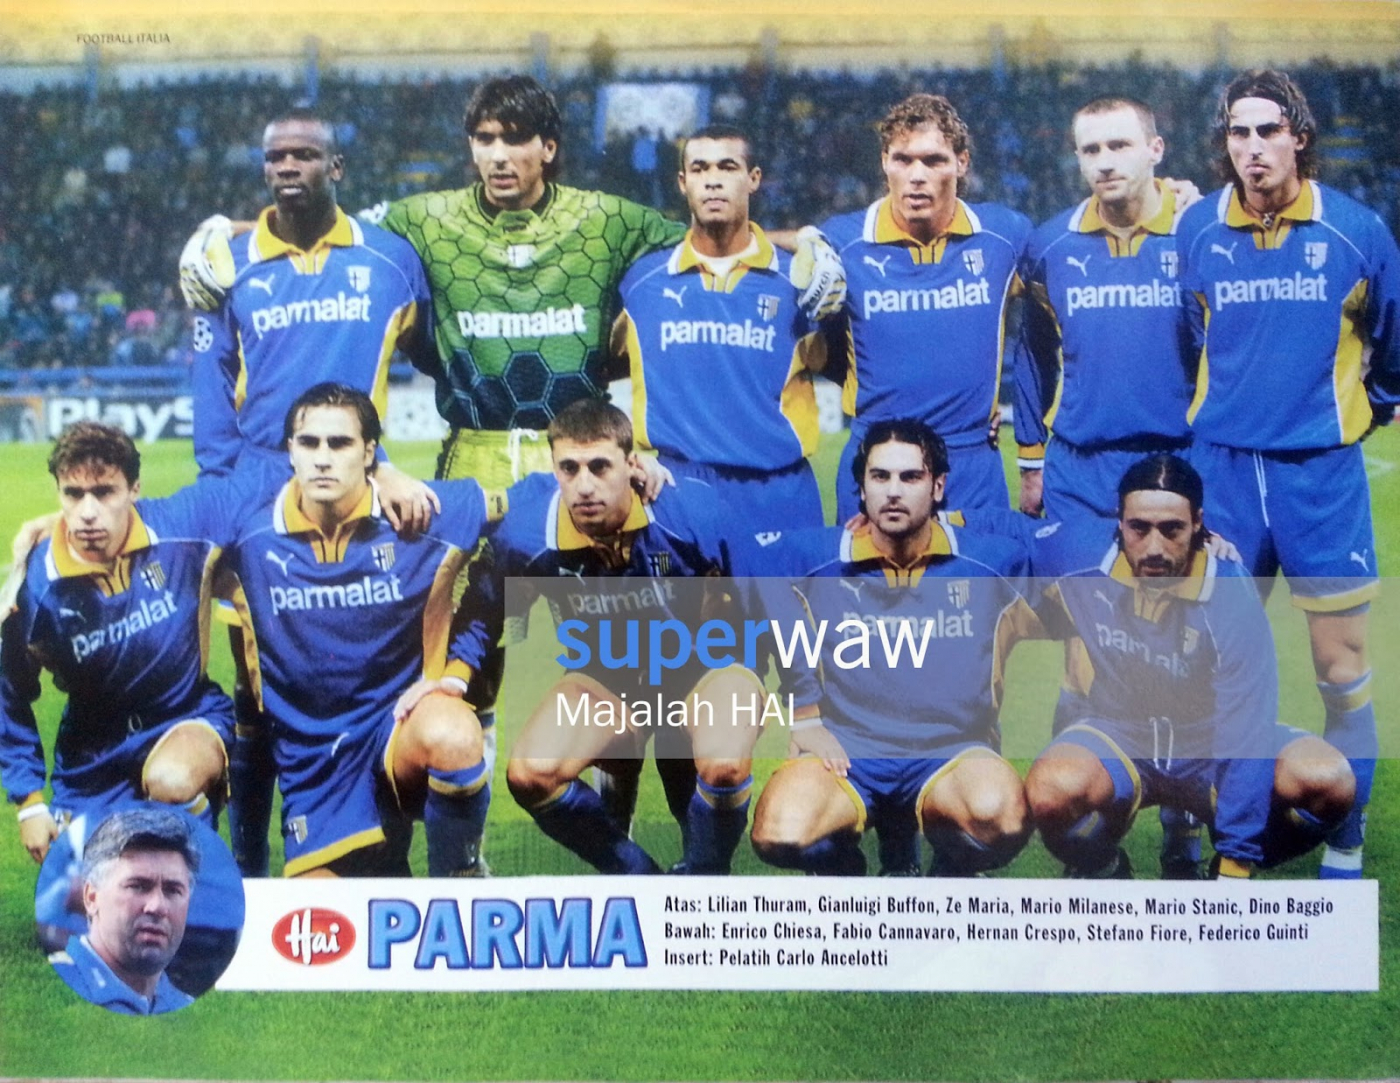 Pin up Tim AC Parma 1997.jpg